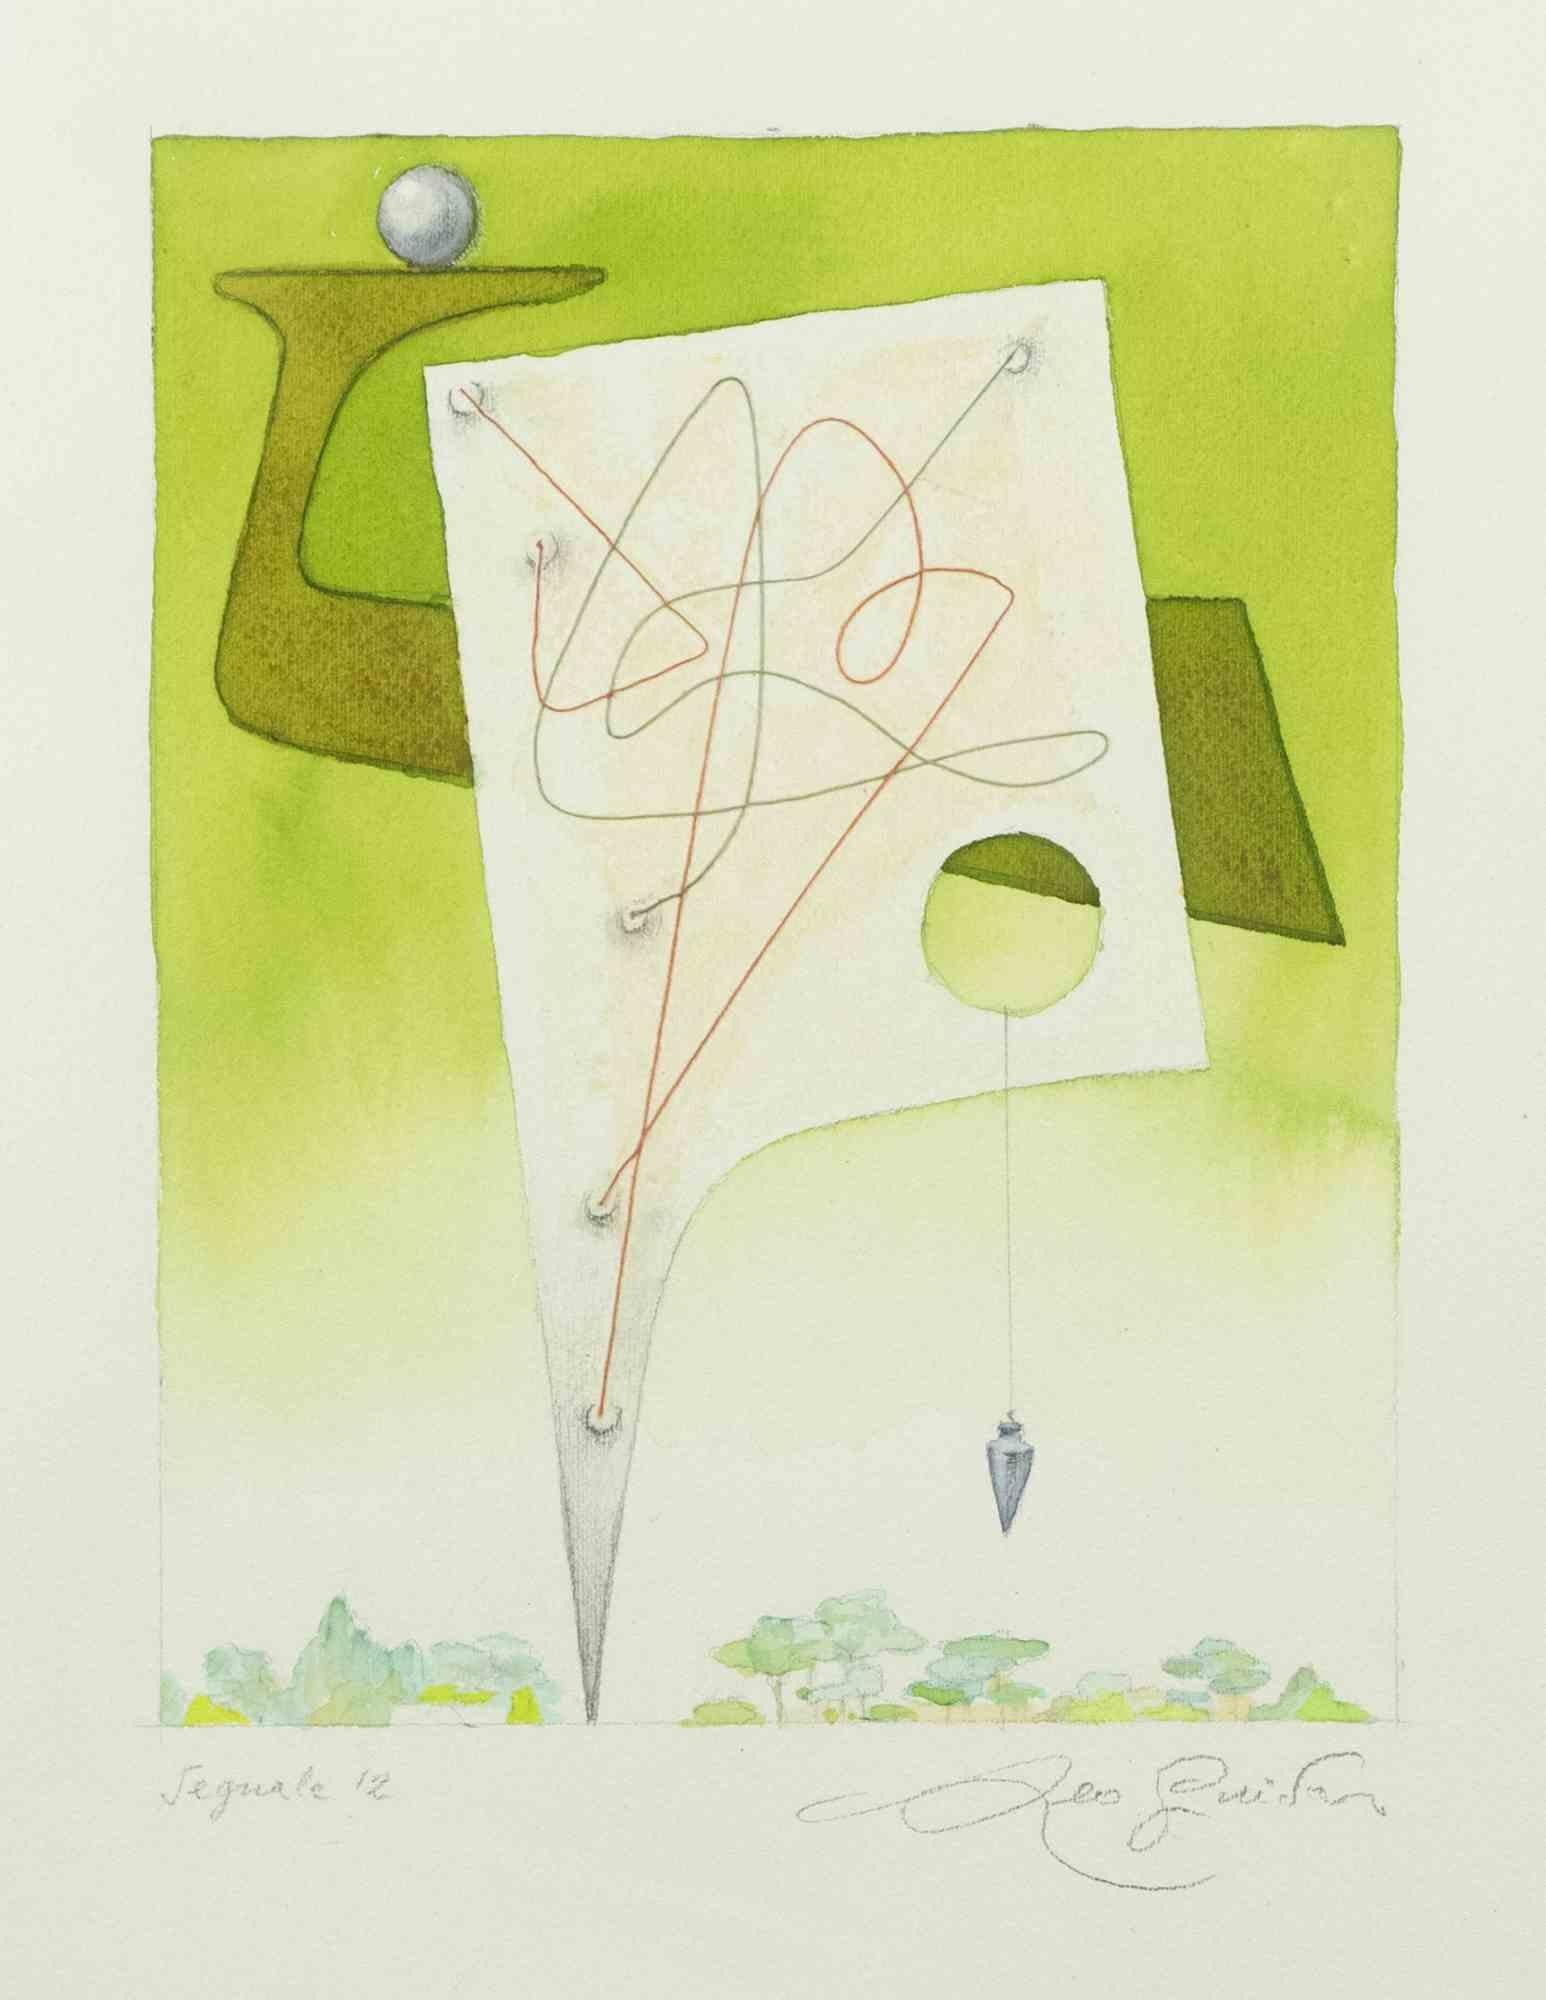 Signal 12 ist ein zeitgenössisches Kunstwerk von Leo Guida aus den 1970er Jahren.

Gemischte farbige Tinte und Aquarellfarbe auf Papier.

Handsigniert, am unteren Rand betitelt

Inklusive Rahmen: 63,5 x 49 cm

Leo Guida  (1992 - 2017). Mit seinem